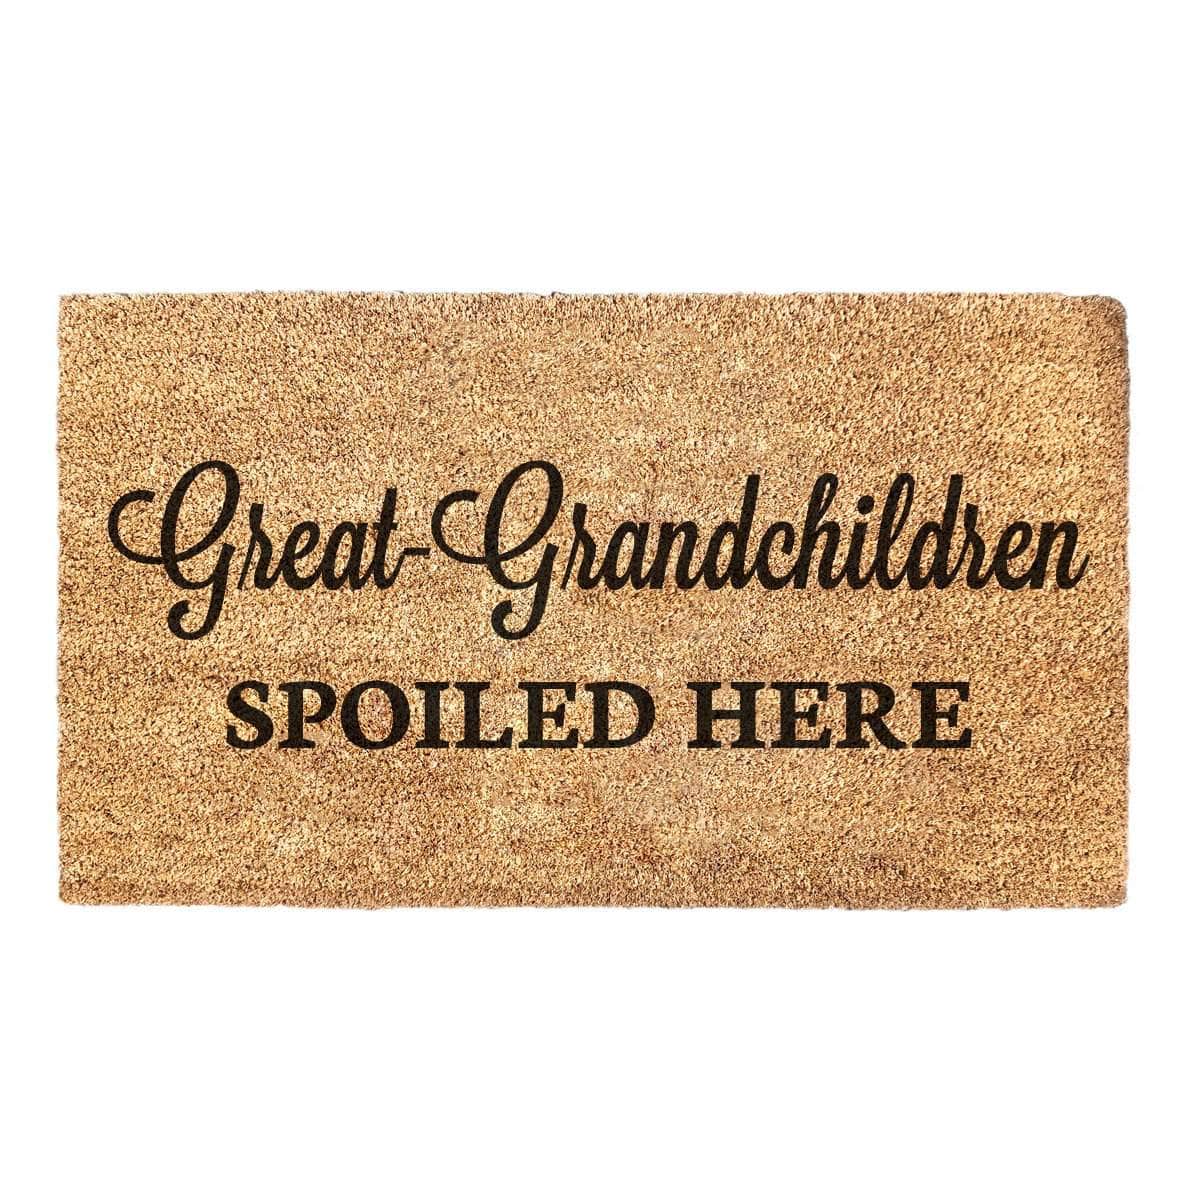 Great-Grandchildren Spoiled - Doormat